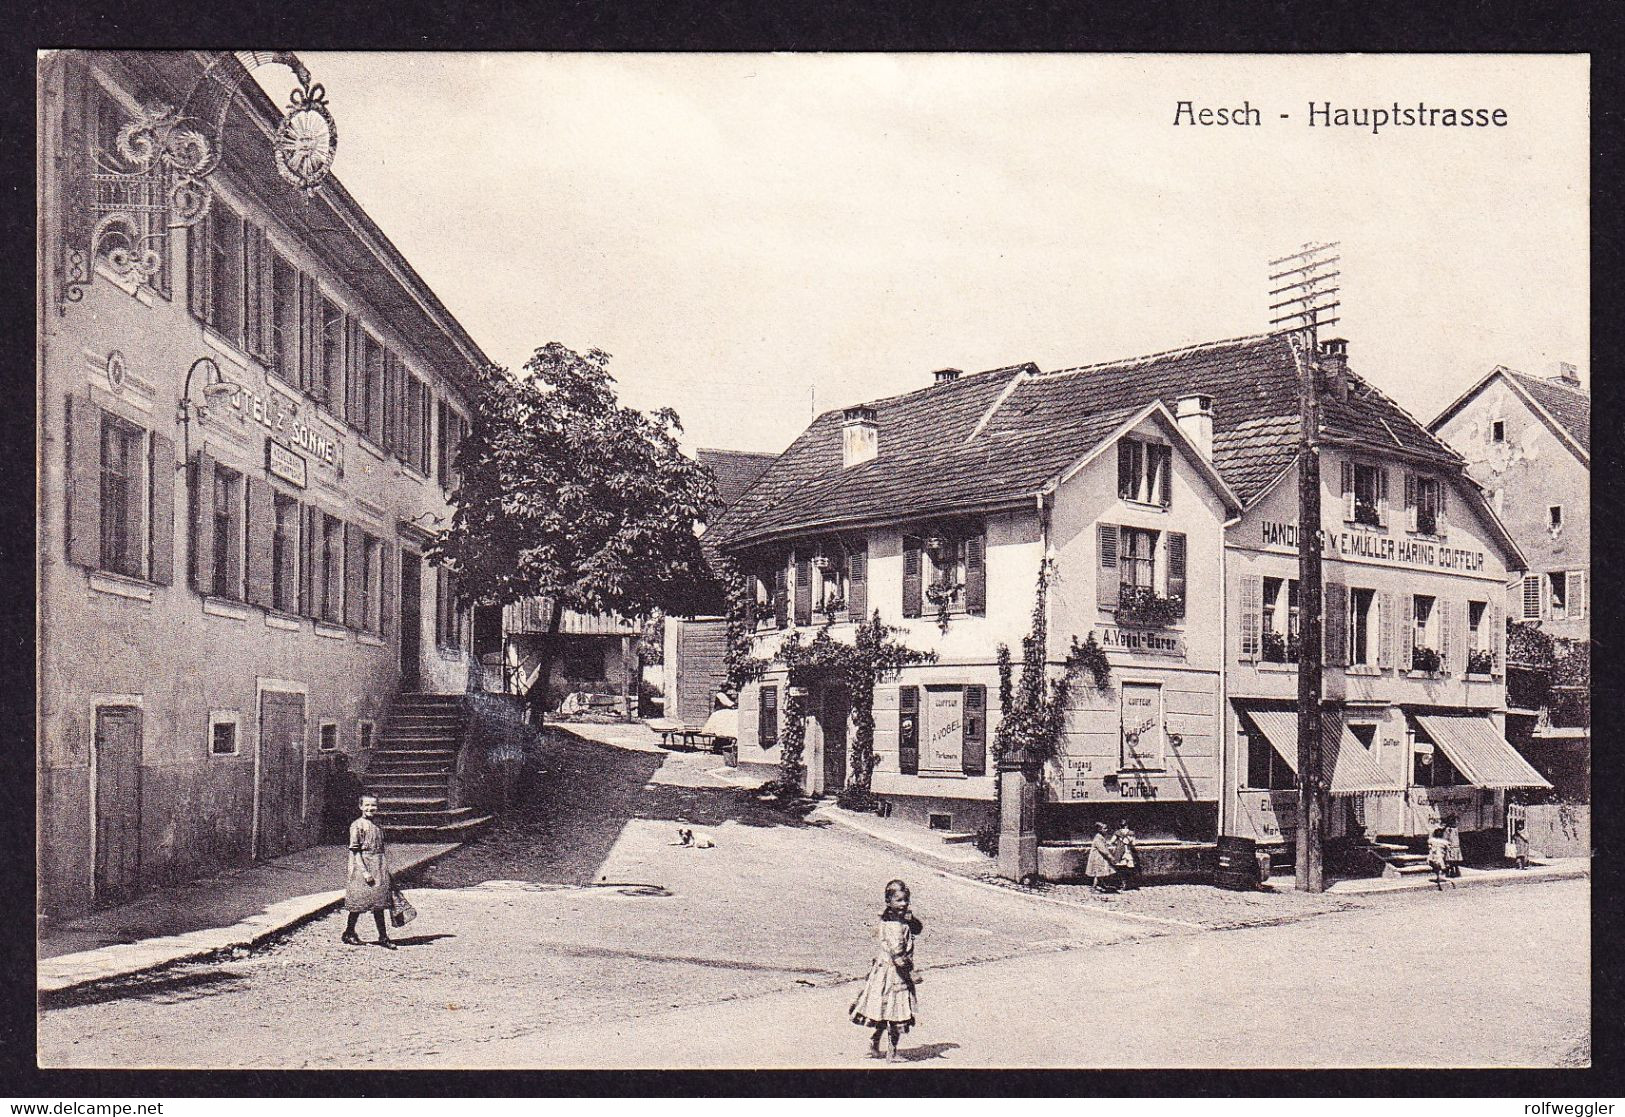 Um 1915 Aus Dem Feld Geschriebene AK: Aesch, Hauptstrasse Mit Hotel Sonne. Coiffeur Geschäft. - Aesch